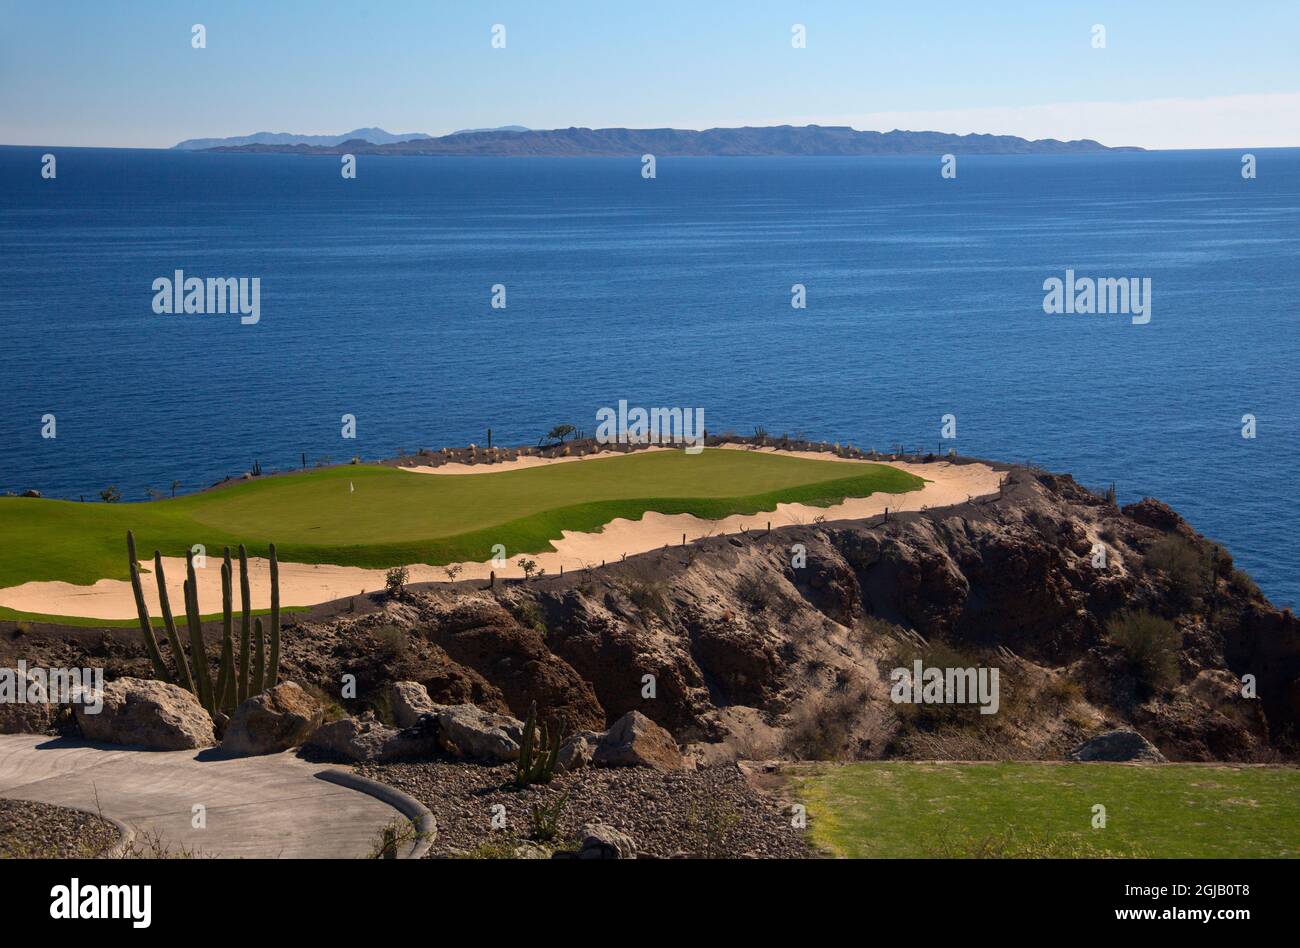 Mexico, Baja California Sur, Loreto. Danzante Bay golf course, designed by  Rees, Jones, at Villa del Palmar Loreto Stock Photo - Alamy